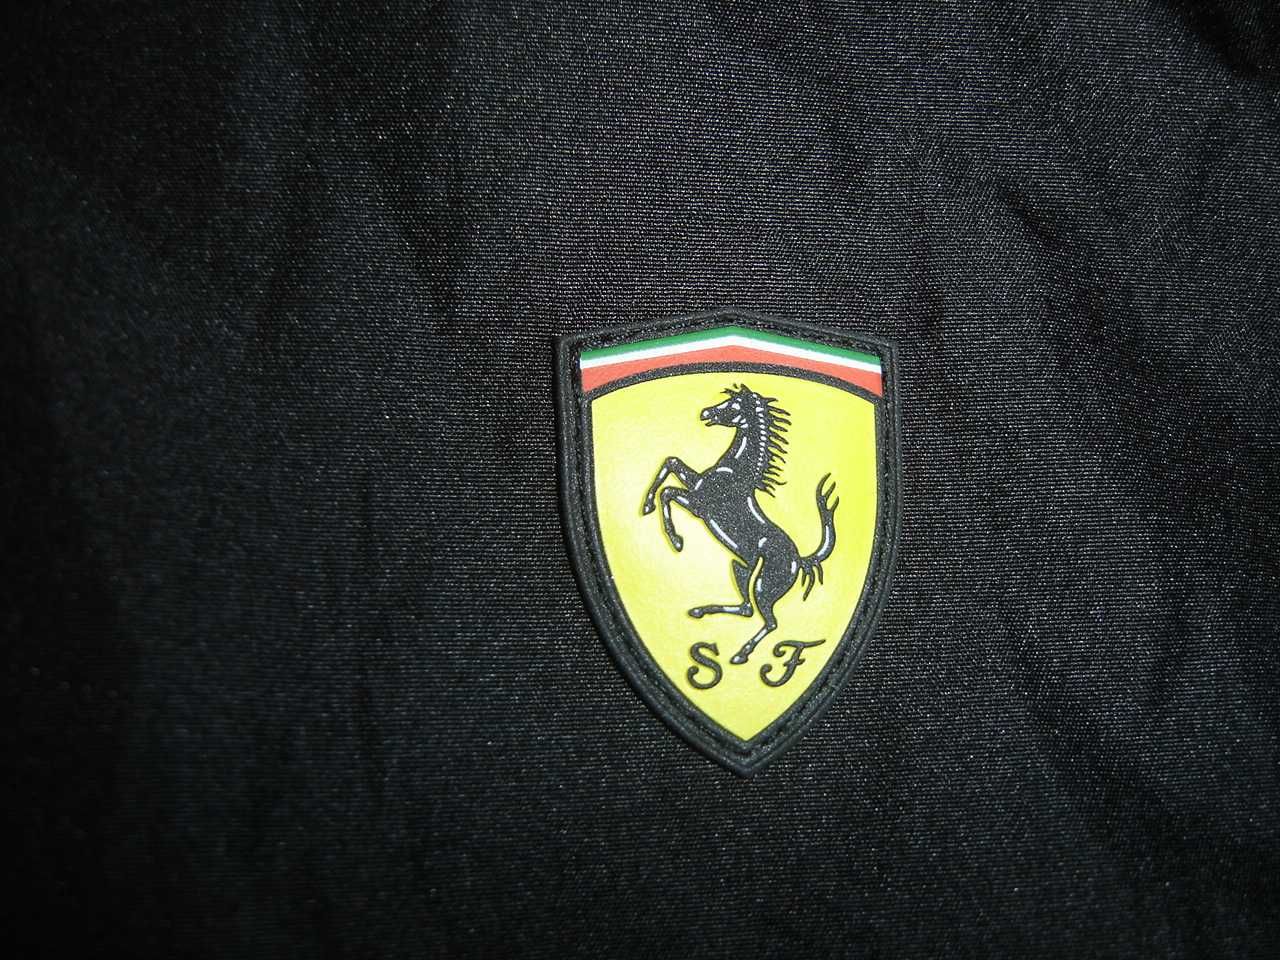 Ferrari Scuderia kurtka męska wiatrówka przeciwdeszczowa jak nowa L